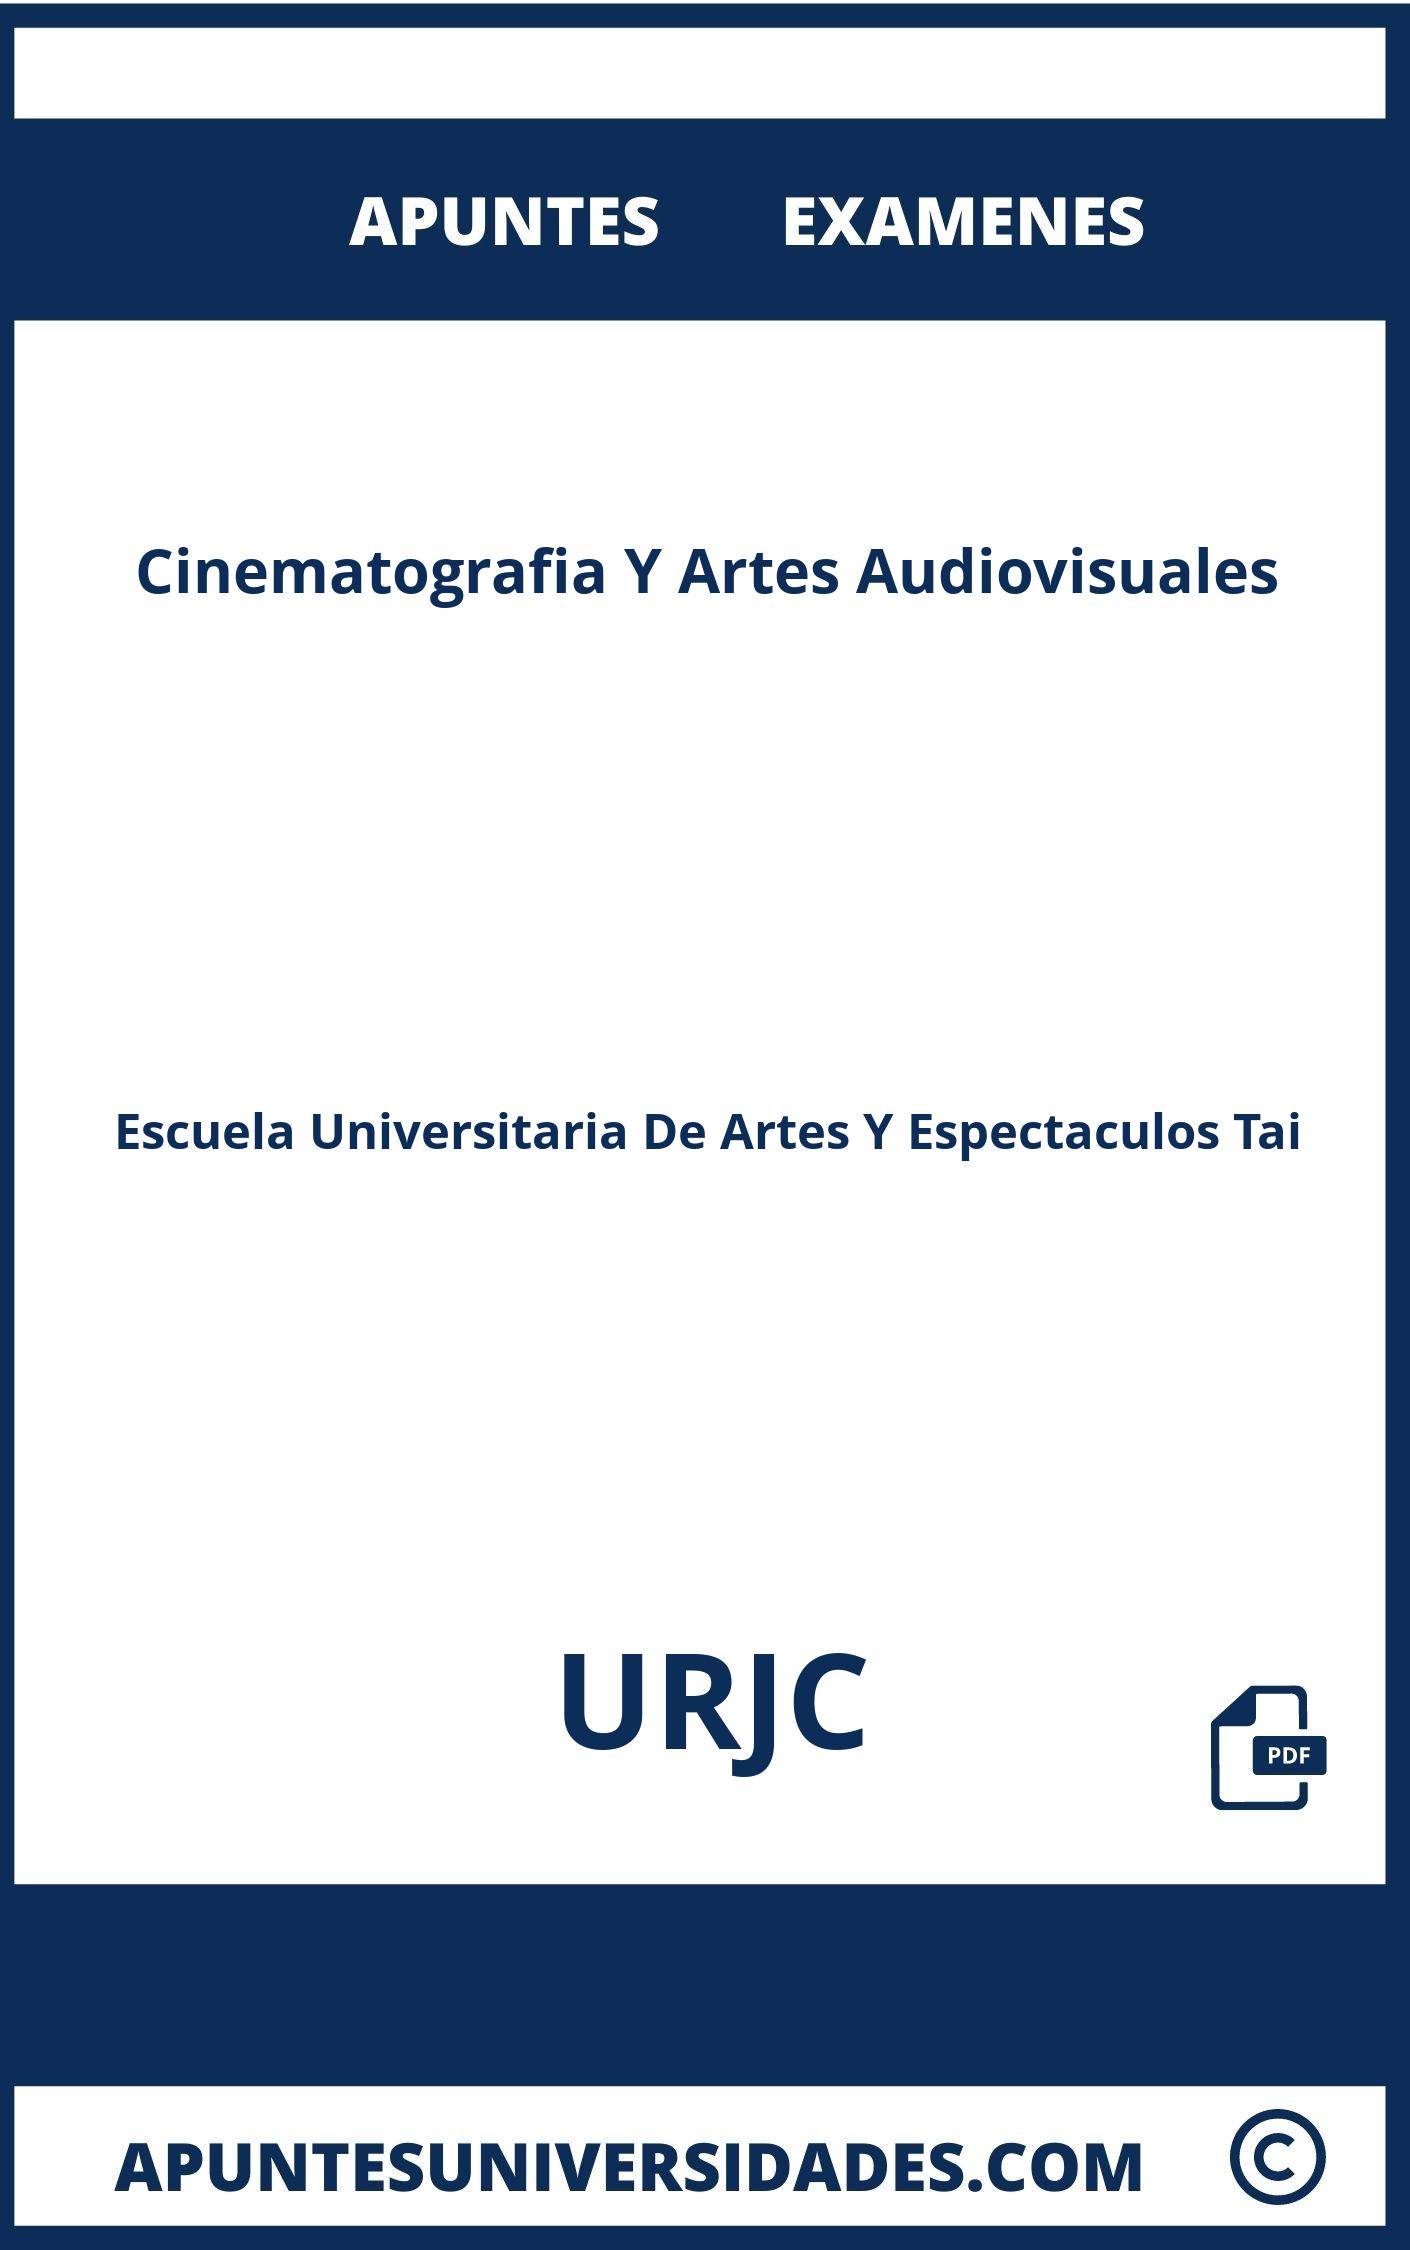 Apuntes Examenes Cinematografia Y Artes Audiovisuales URJC